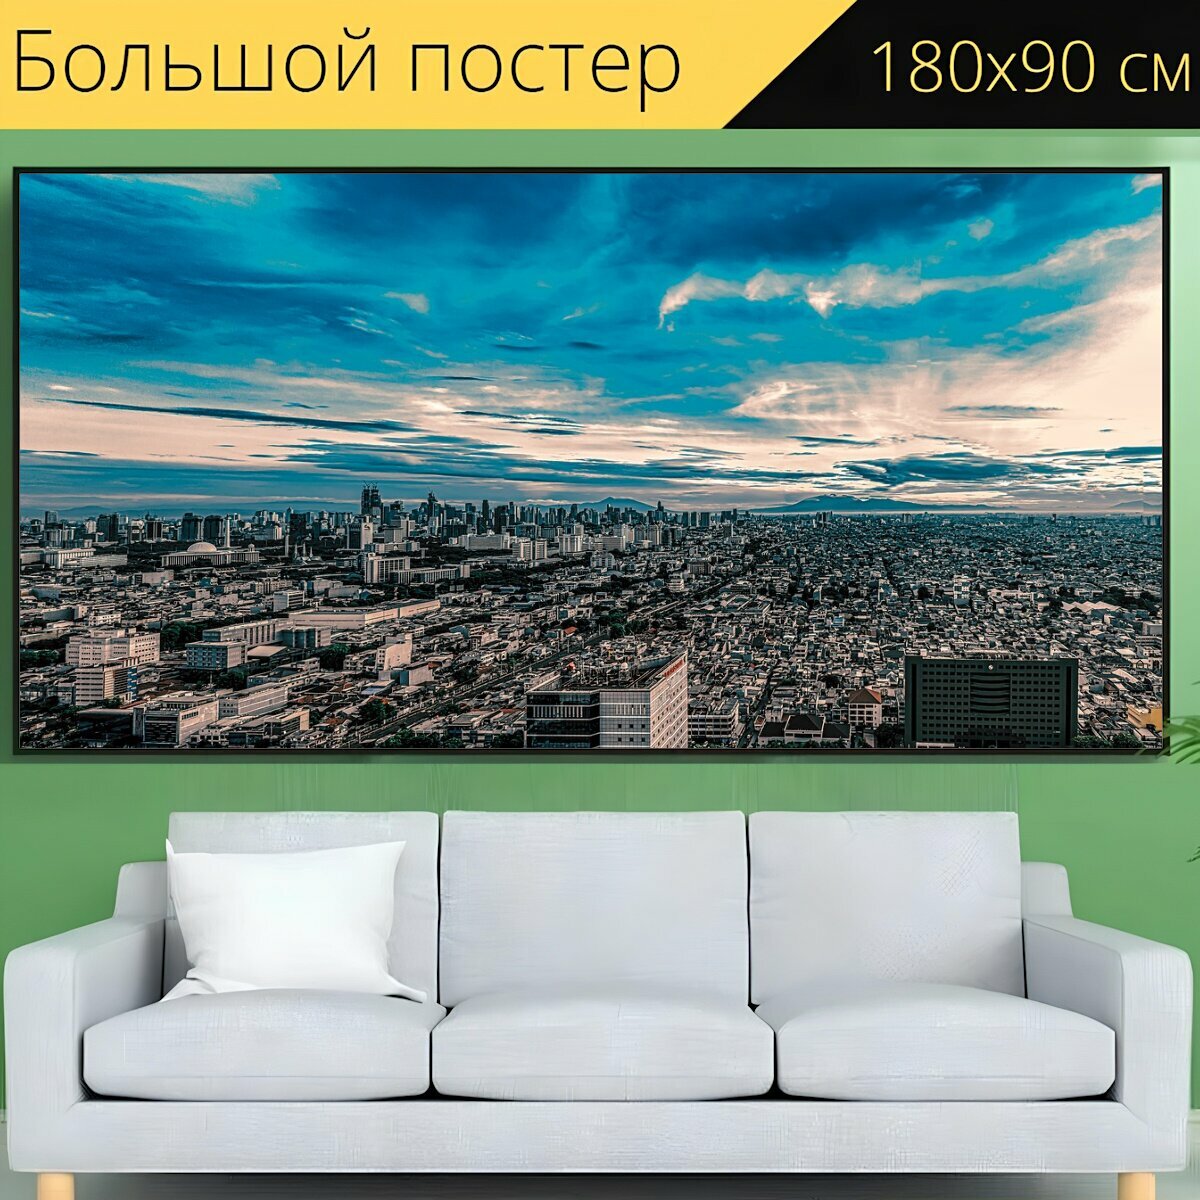 Большой постер "Город, небо, архитектура" 180 x 90 см. для интерьера